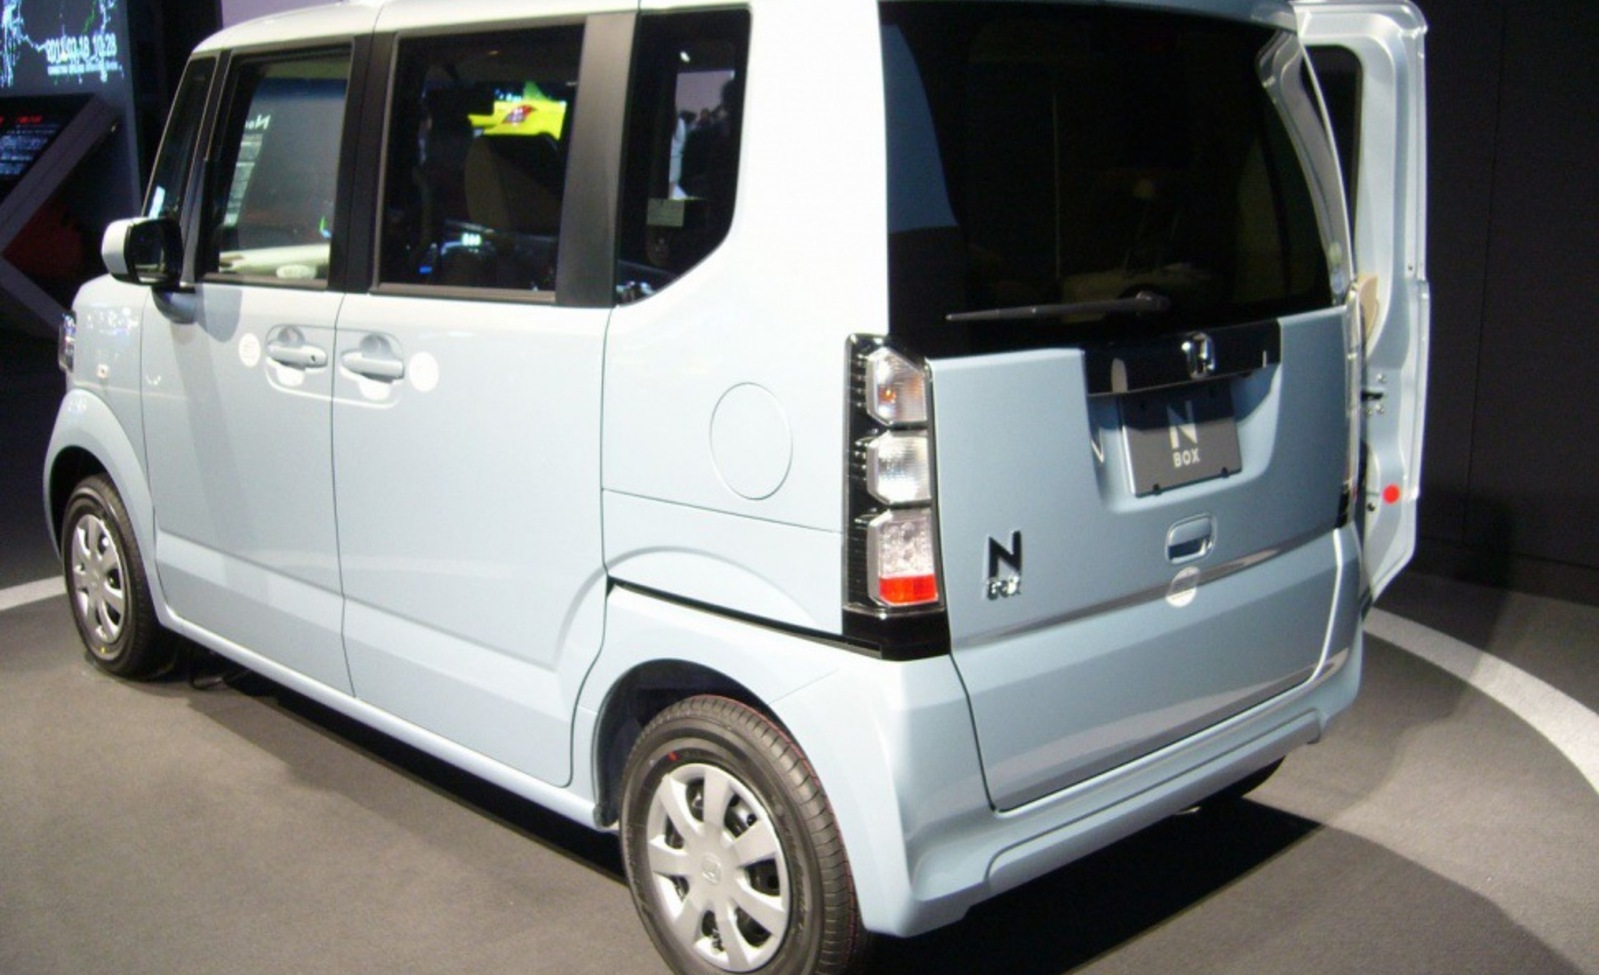 NBox của Honda  mẫu xe ô tô bán chạy nhất tại Nhật Bản  baotintucvn